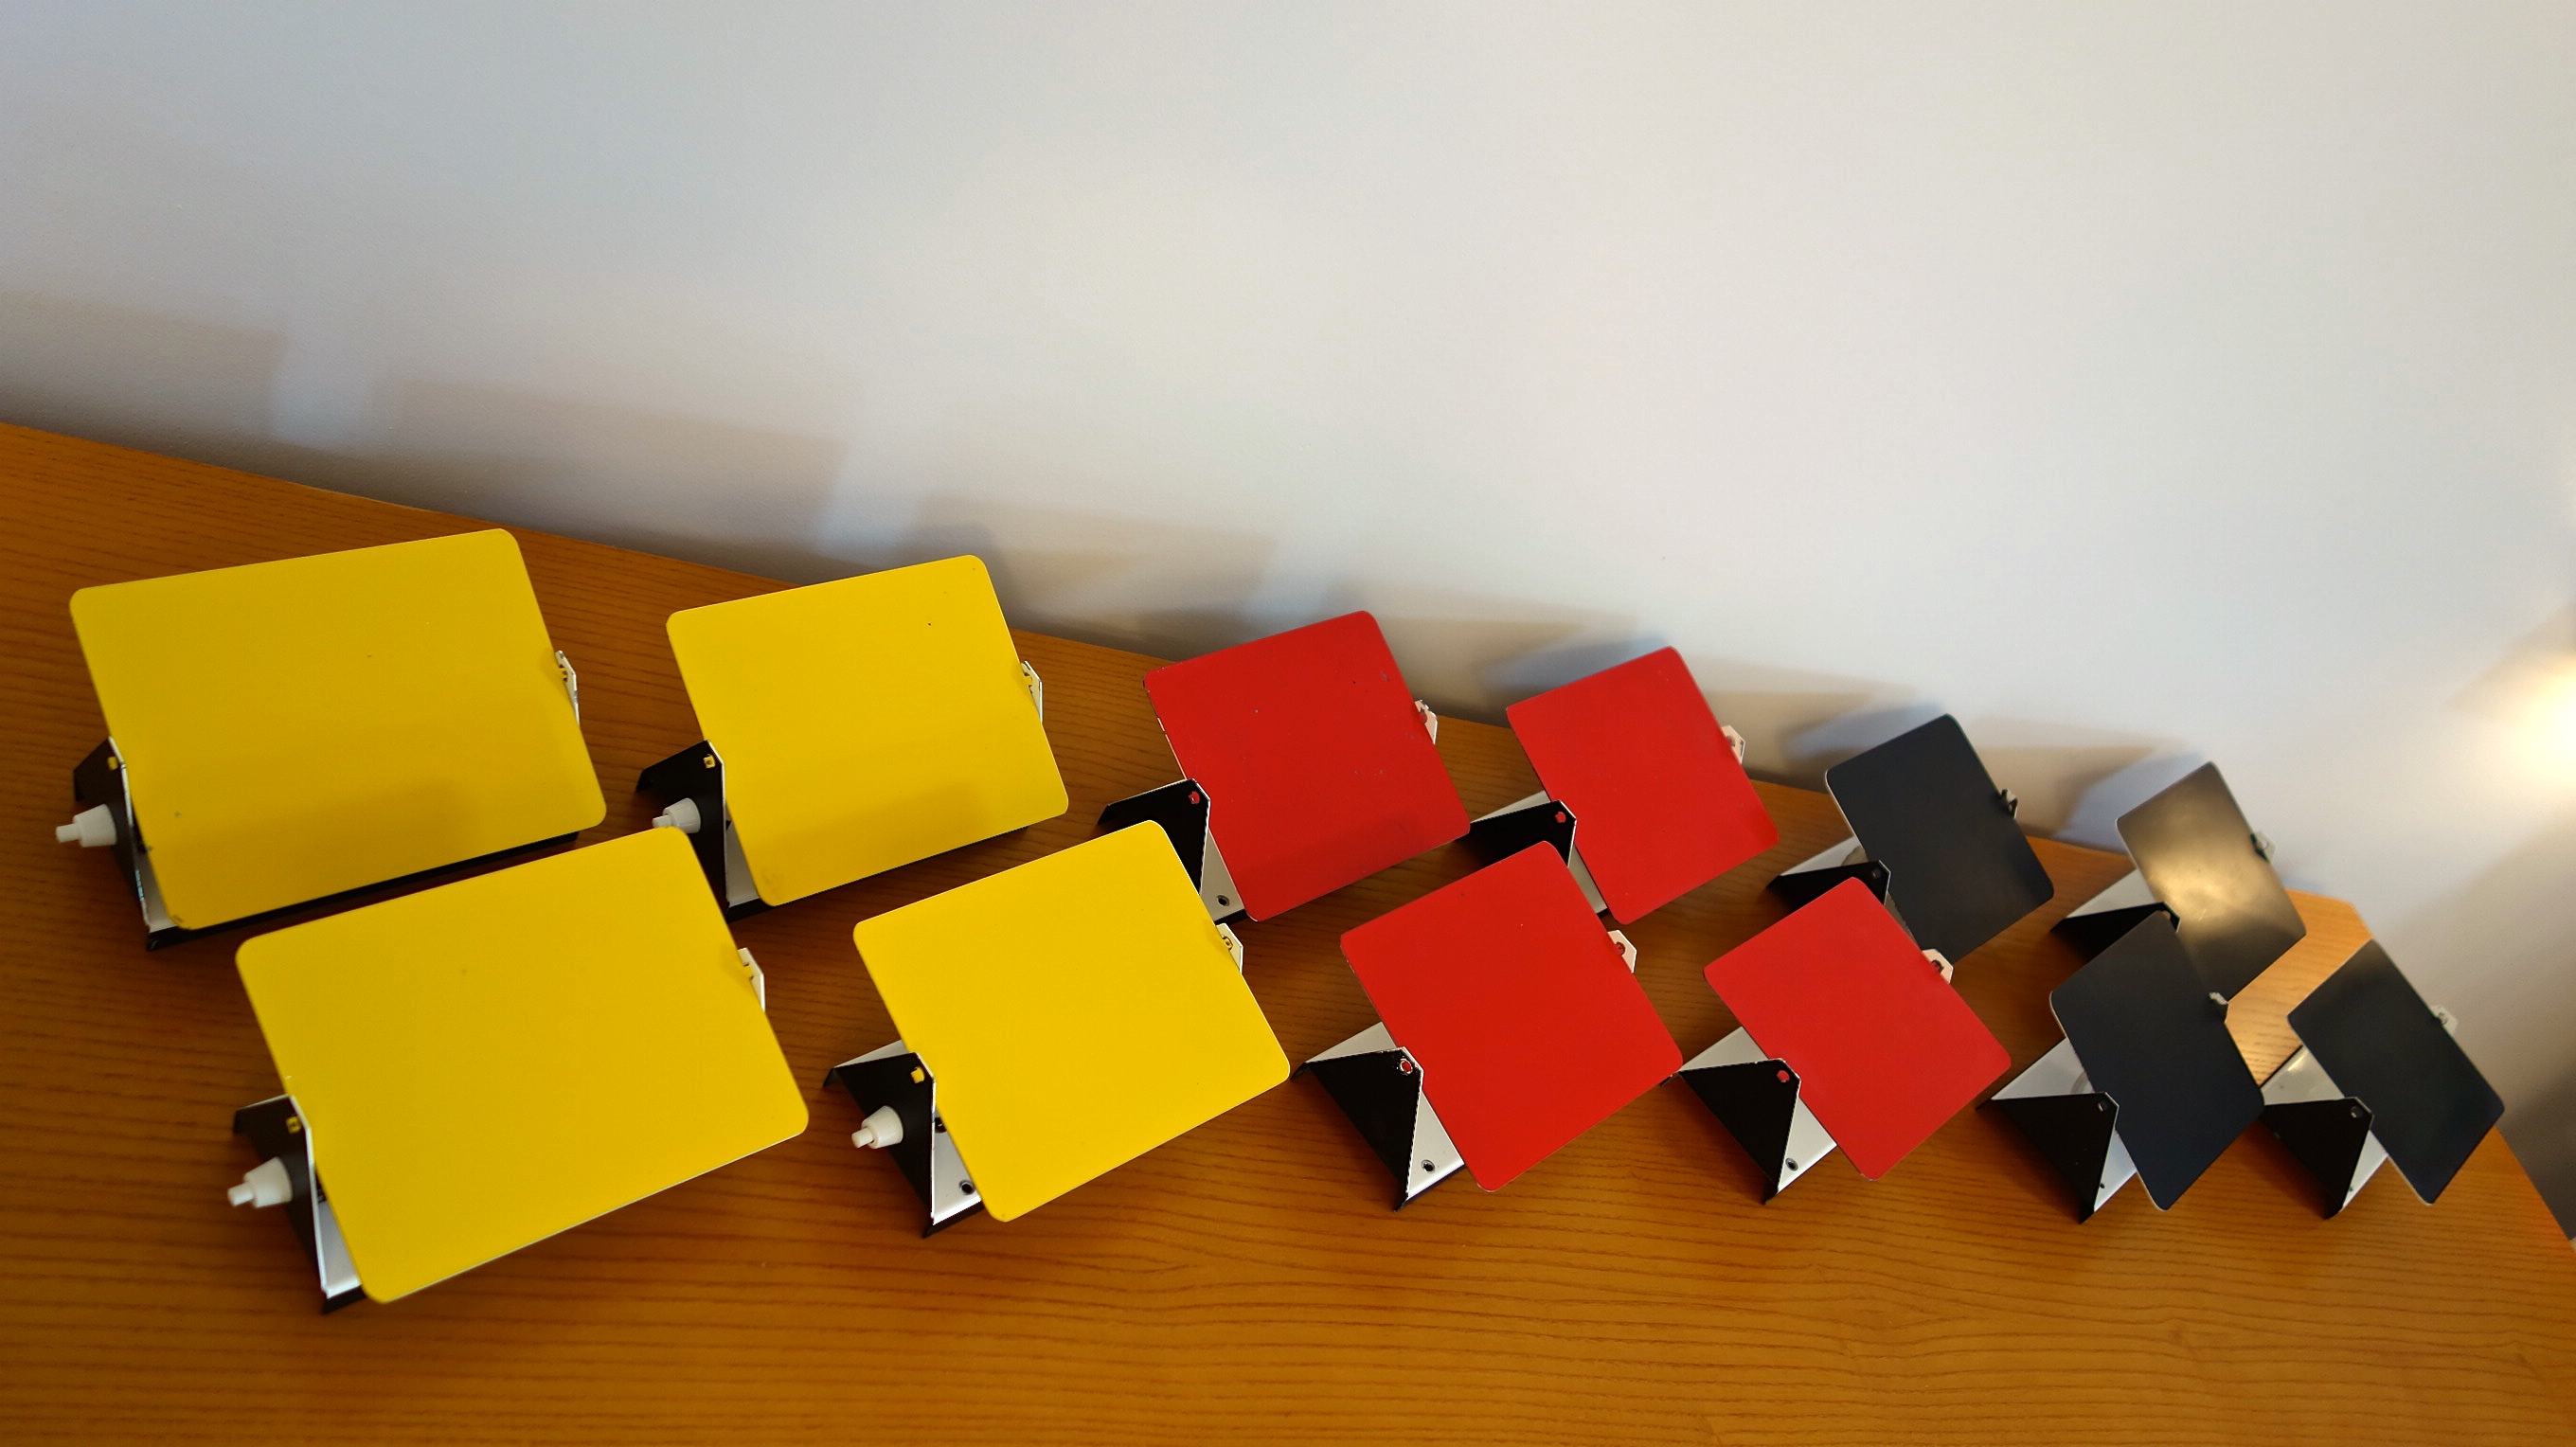 Charlotte PERRIAND (1903-1999) Ensemble de 6 appliques « CP1″ – 1962 Réflecteurs en métal laqué émaillé rouge, jaune et noir; base en métal blanc. Provenance station des Arcs, étiquette SCE, circa 1970. Ht: 12,5cm, l: 17cm p: 7cm